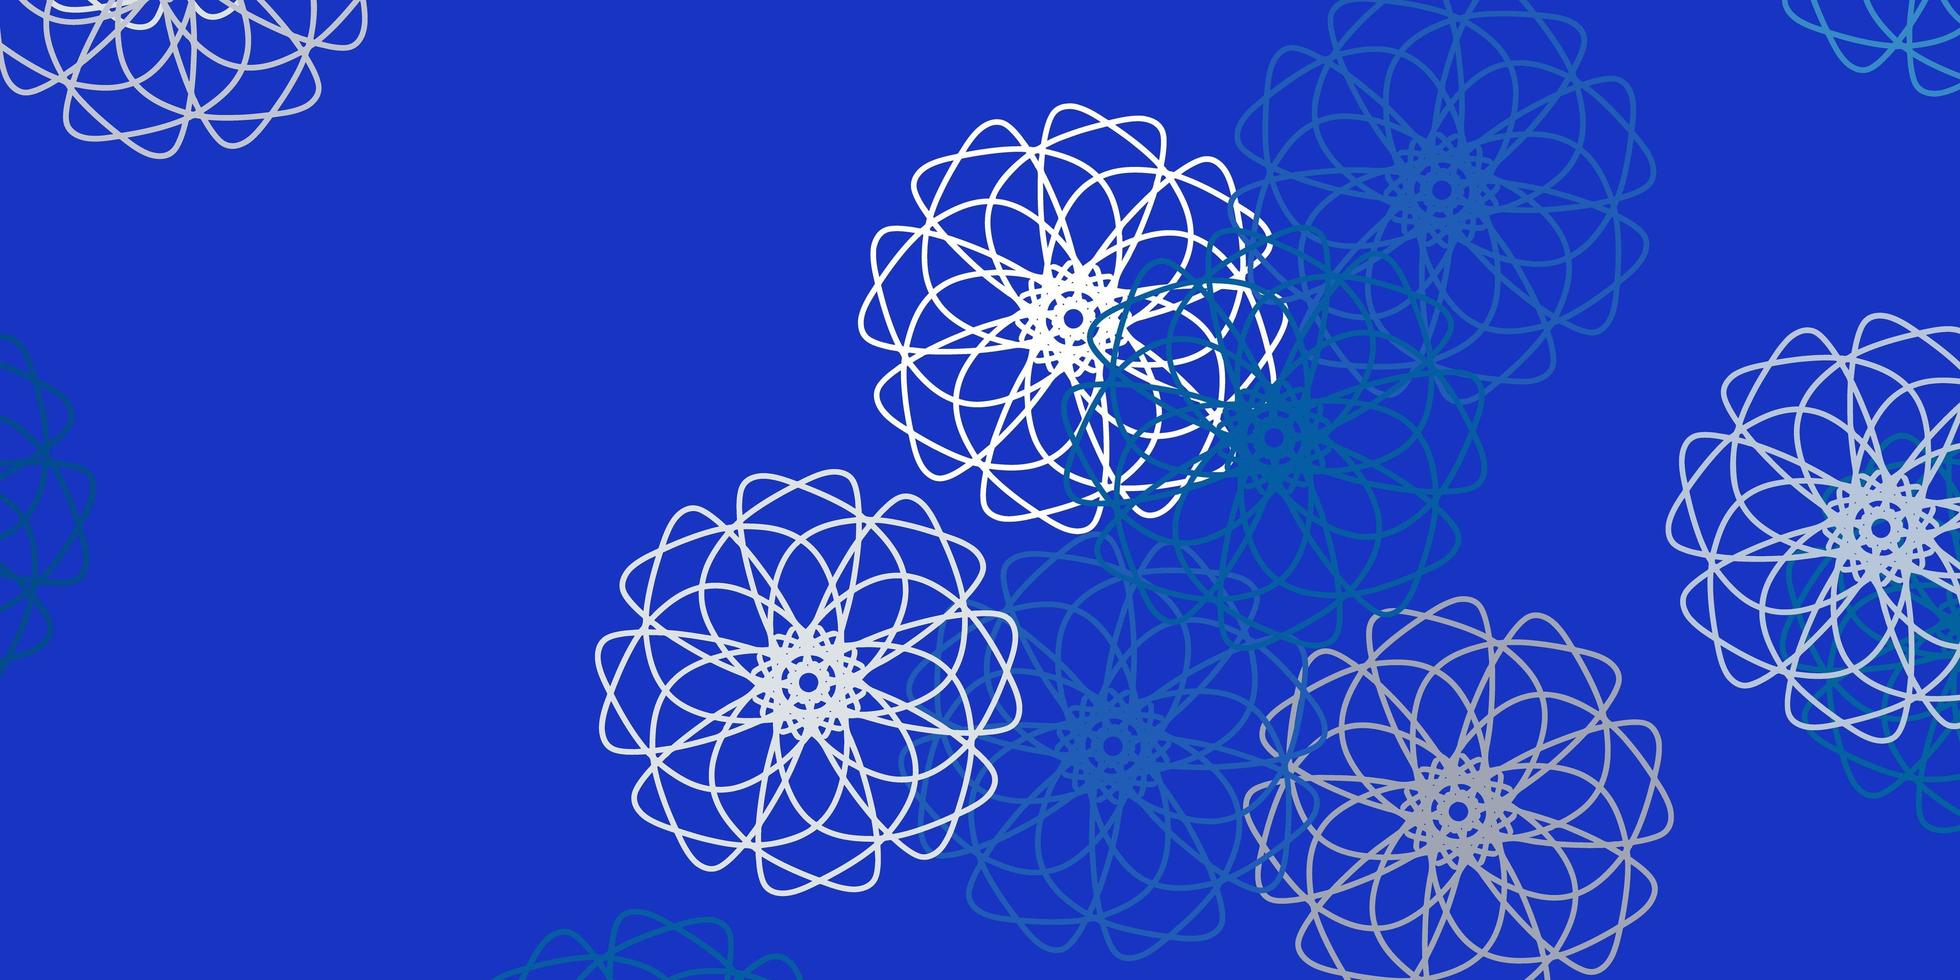 layout natural do vetor azul claro com flores.